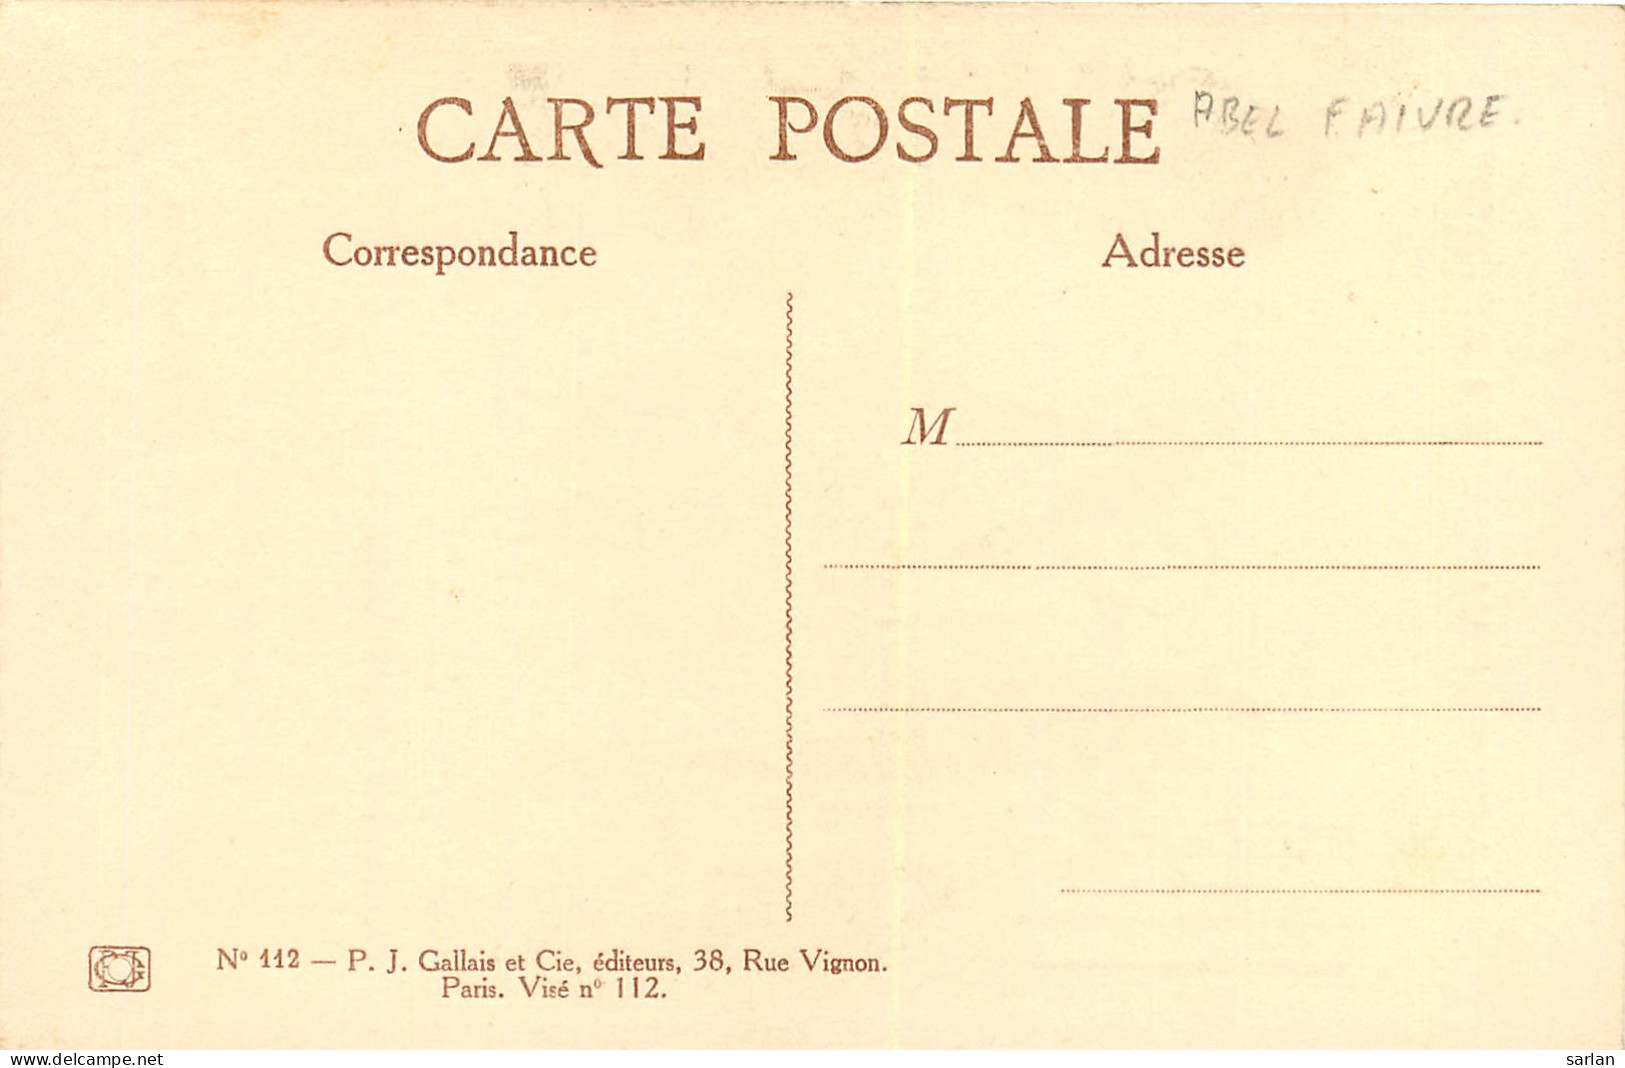 Abel Faivre , série complete de 10 cartes postales , militaires guerre 14/18 anti Allemands  , *  458 98